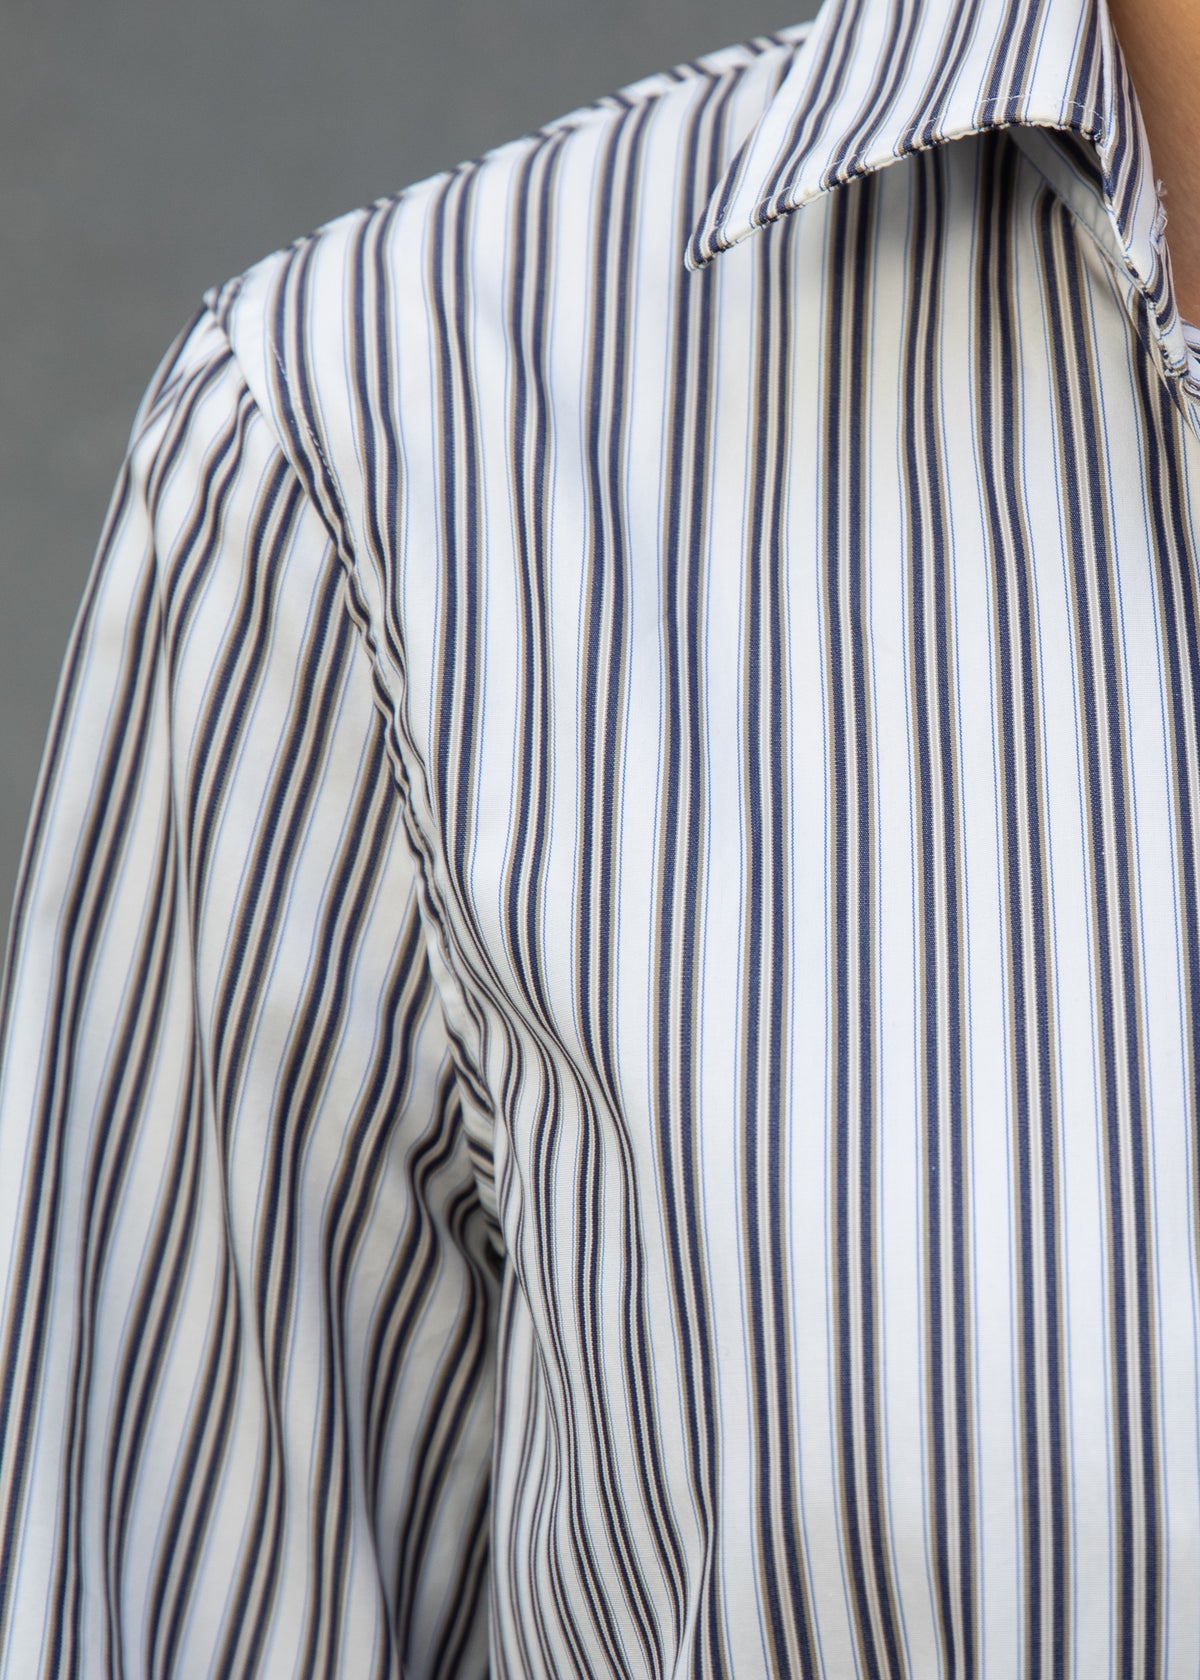 Gemma Button Up Shirt in Toffee Stripe Cotton Poplin